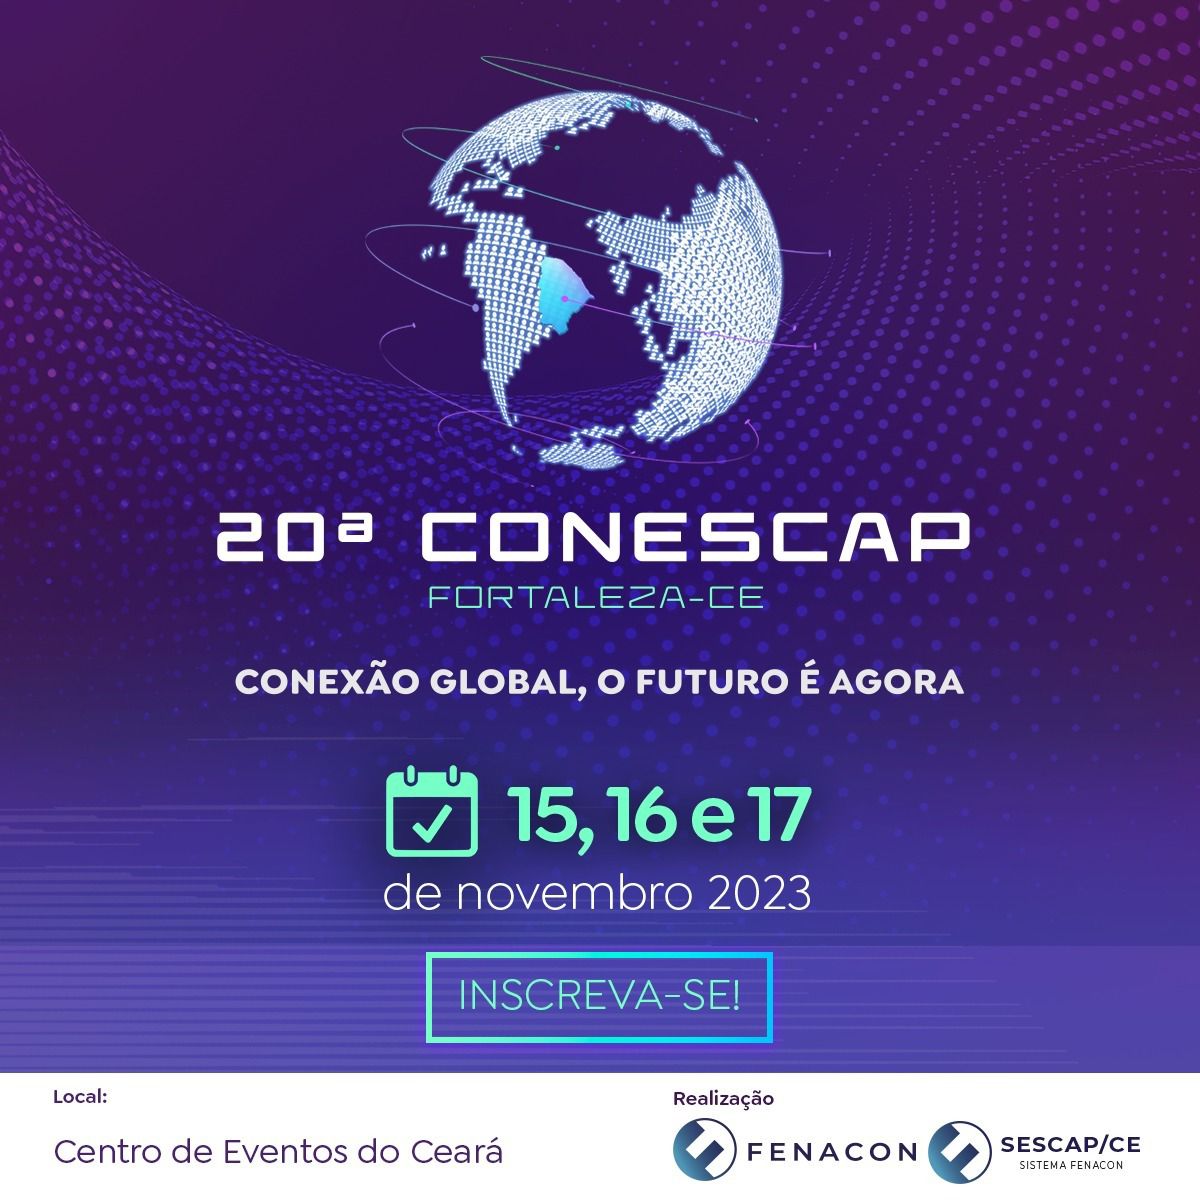 Eventos de dezembro 21, 2021 – AFAPCPG